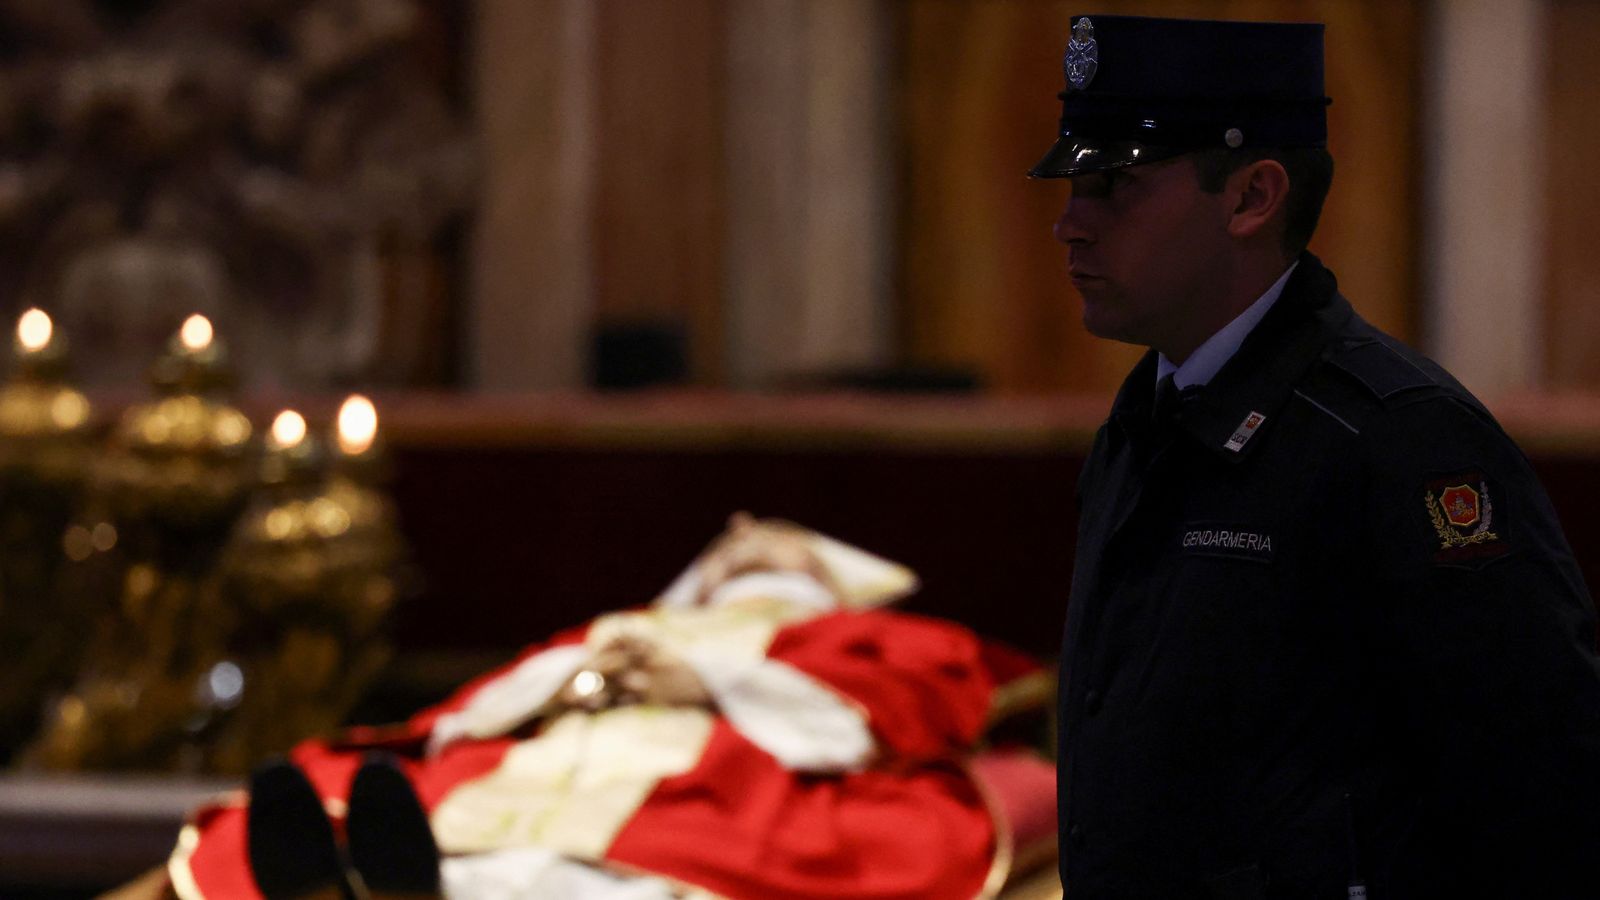 Les funérailles du pape Benoît aujourd’hui entreront dans l’histoire |  nouvelles du monde